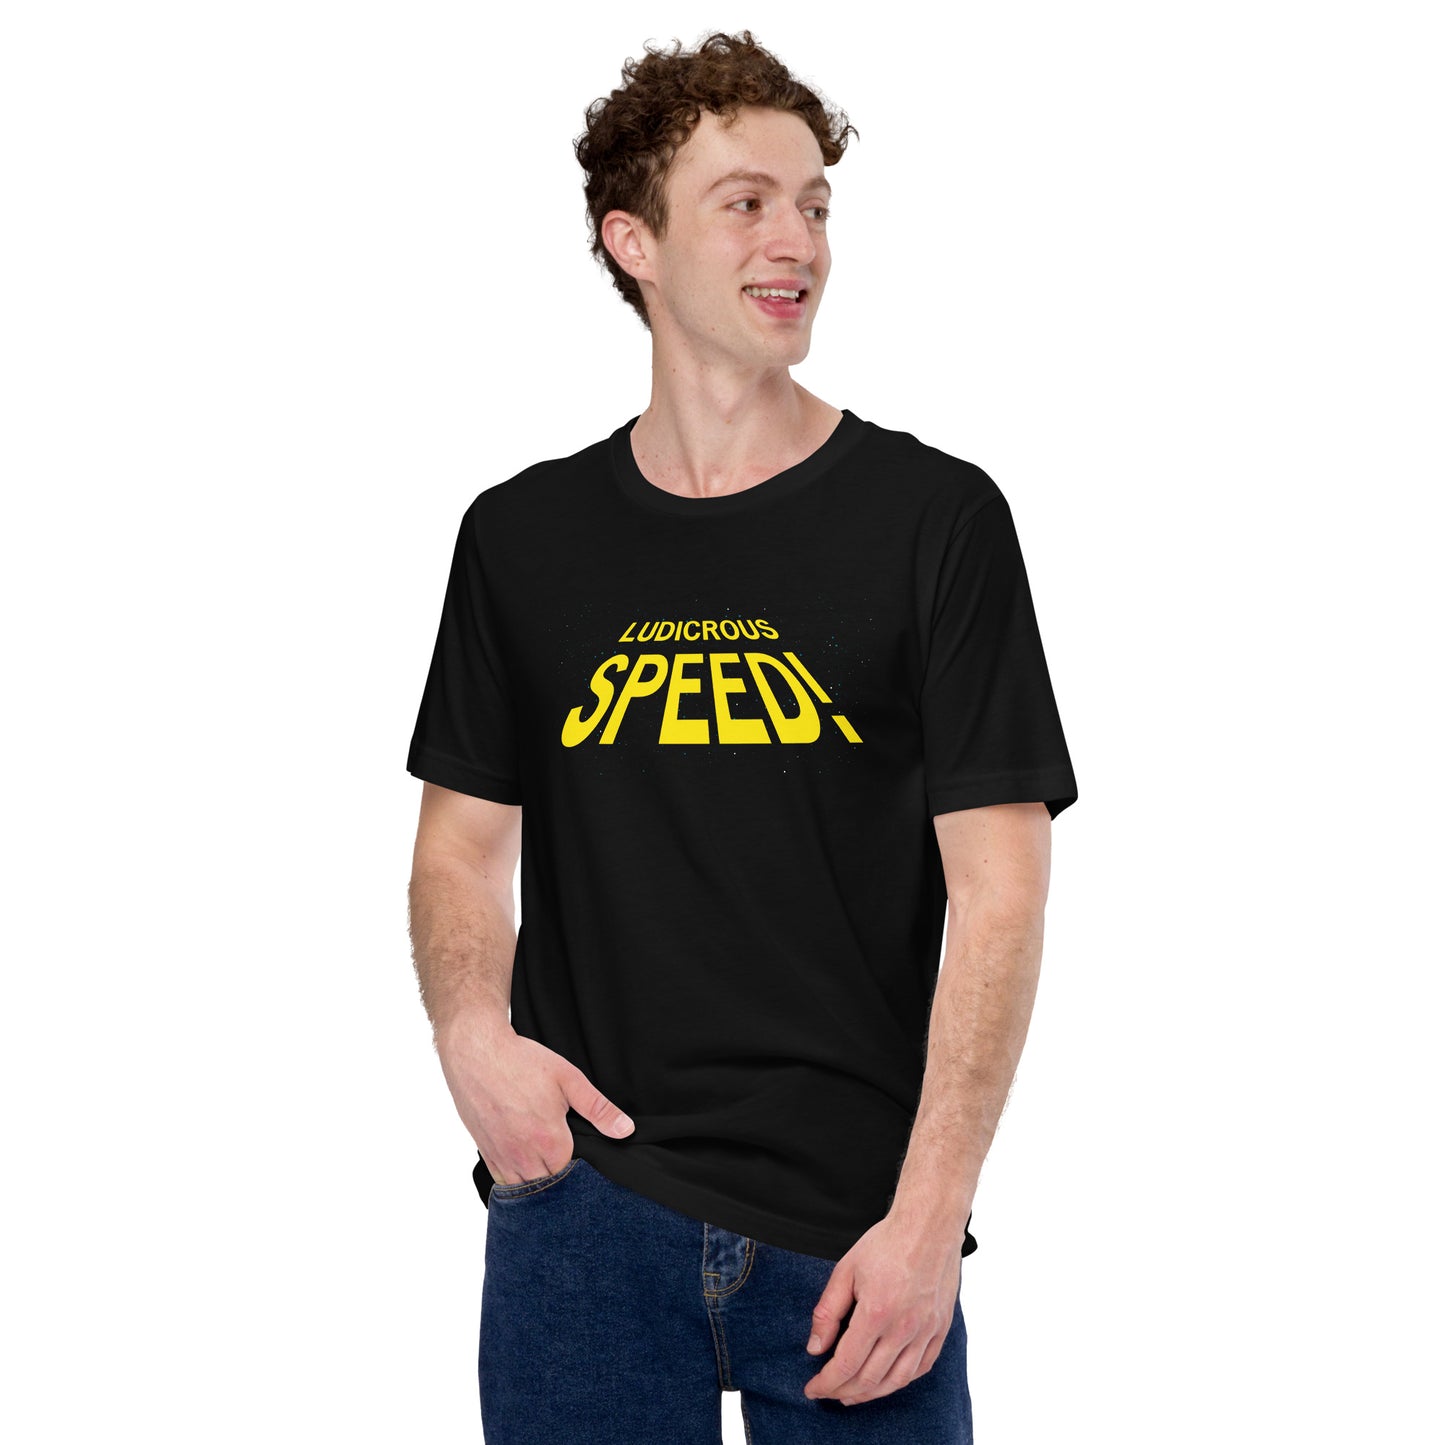 Ludicrous Speed Short-sleeve Unisex T-shirt Black Mockup